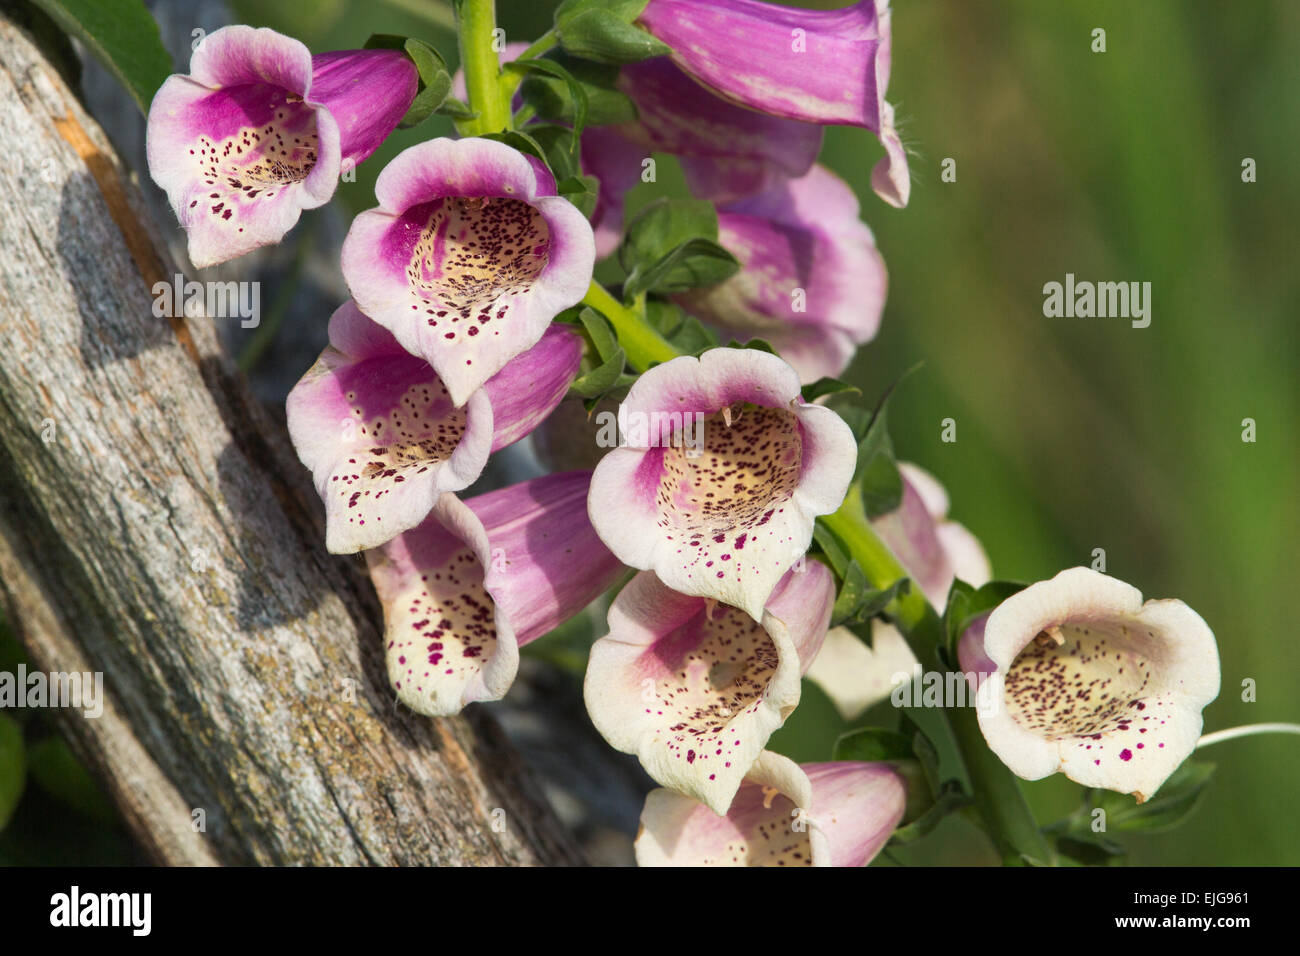 Foxglove - Digitalis purpurea Stock Photo